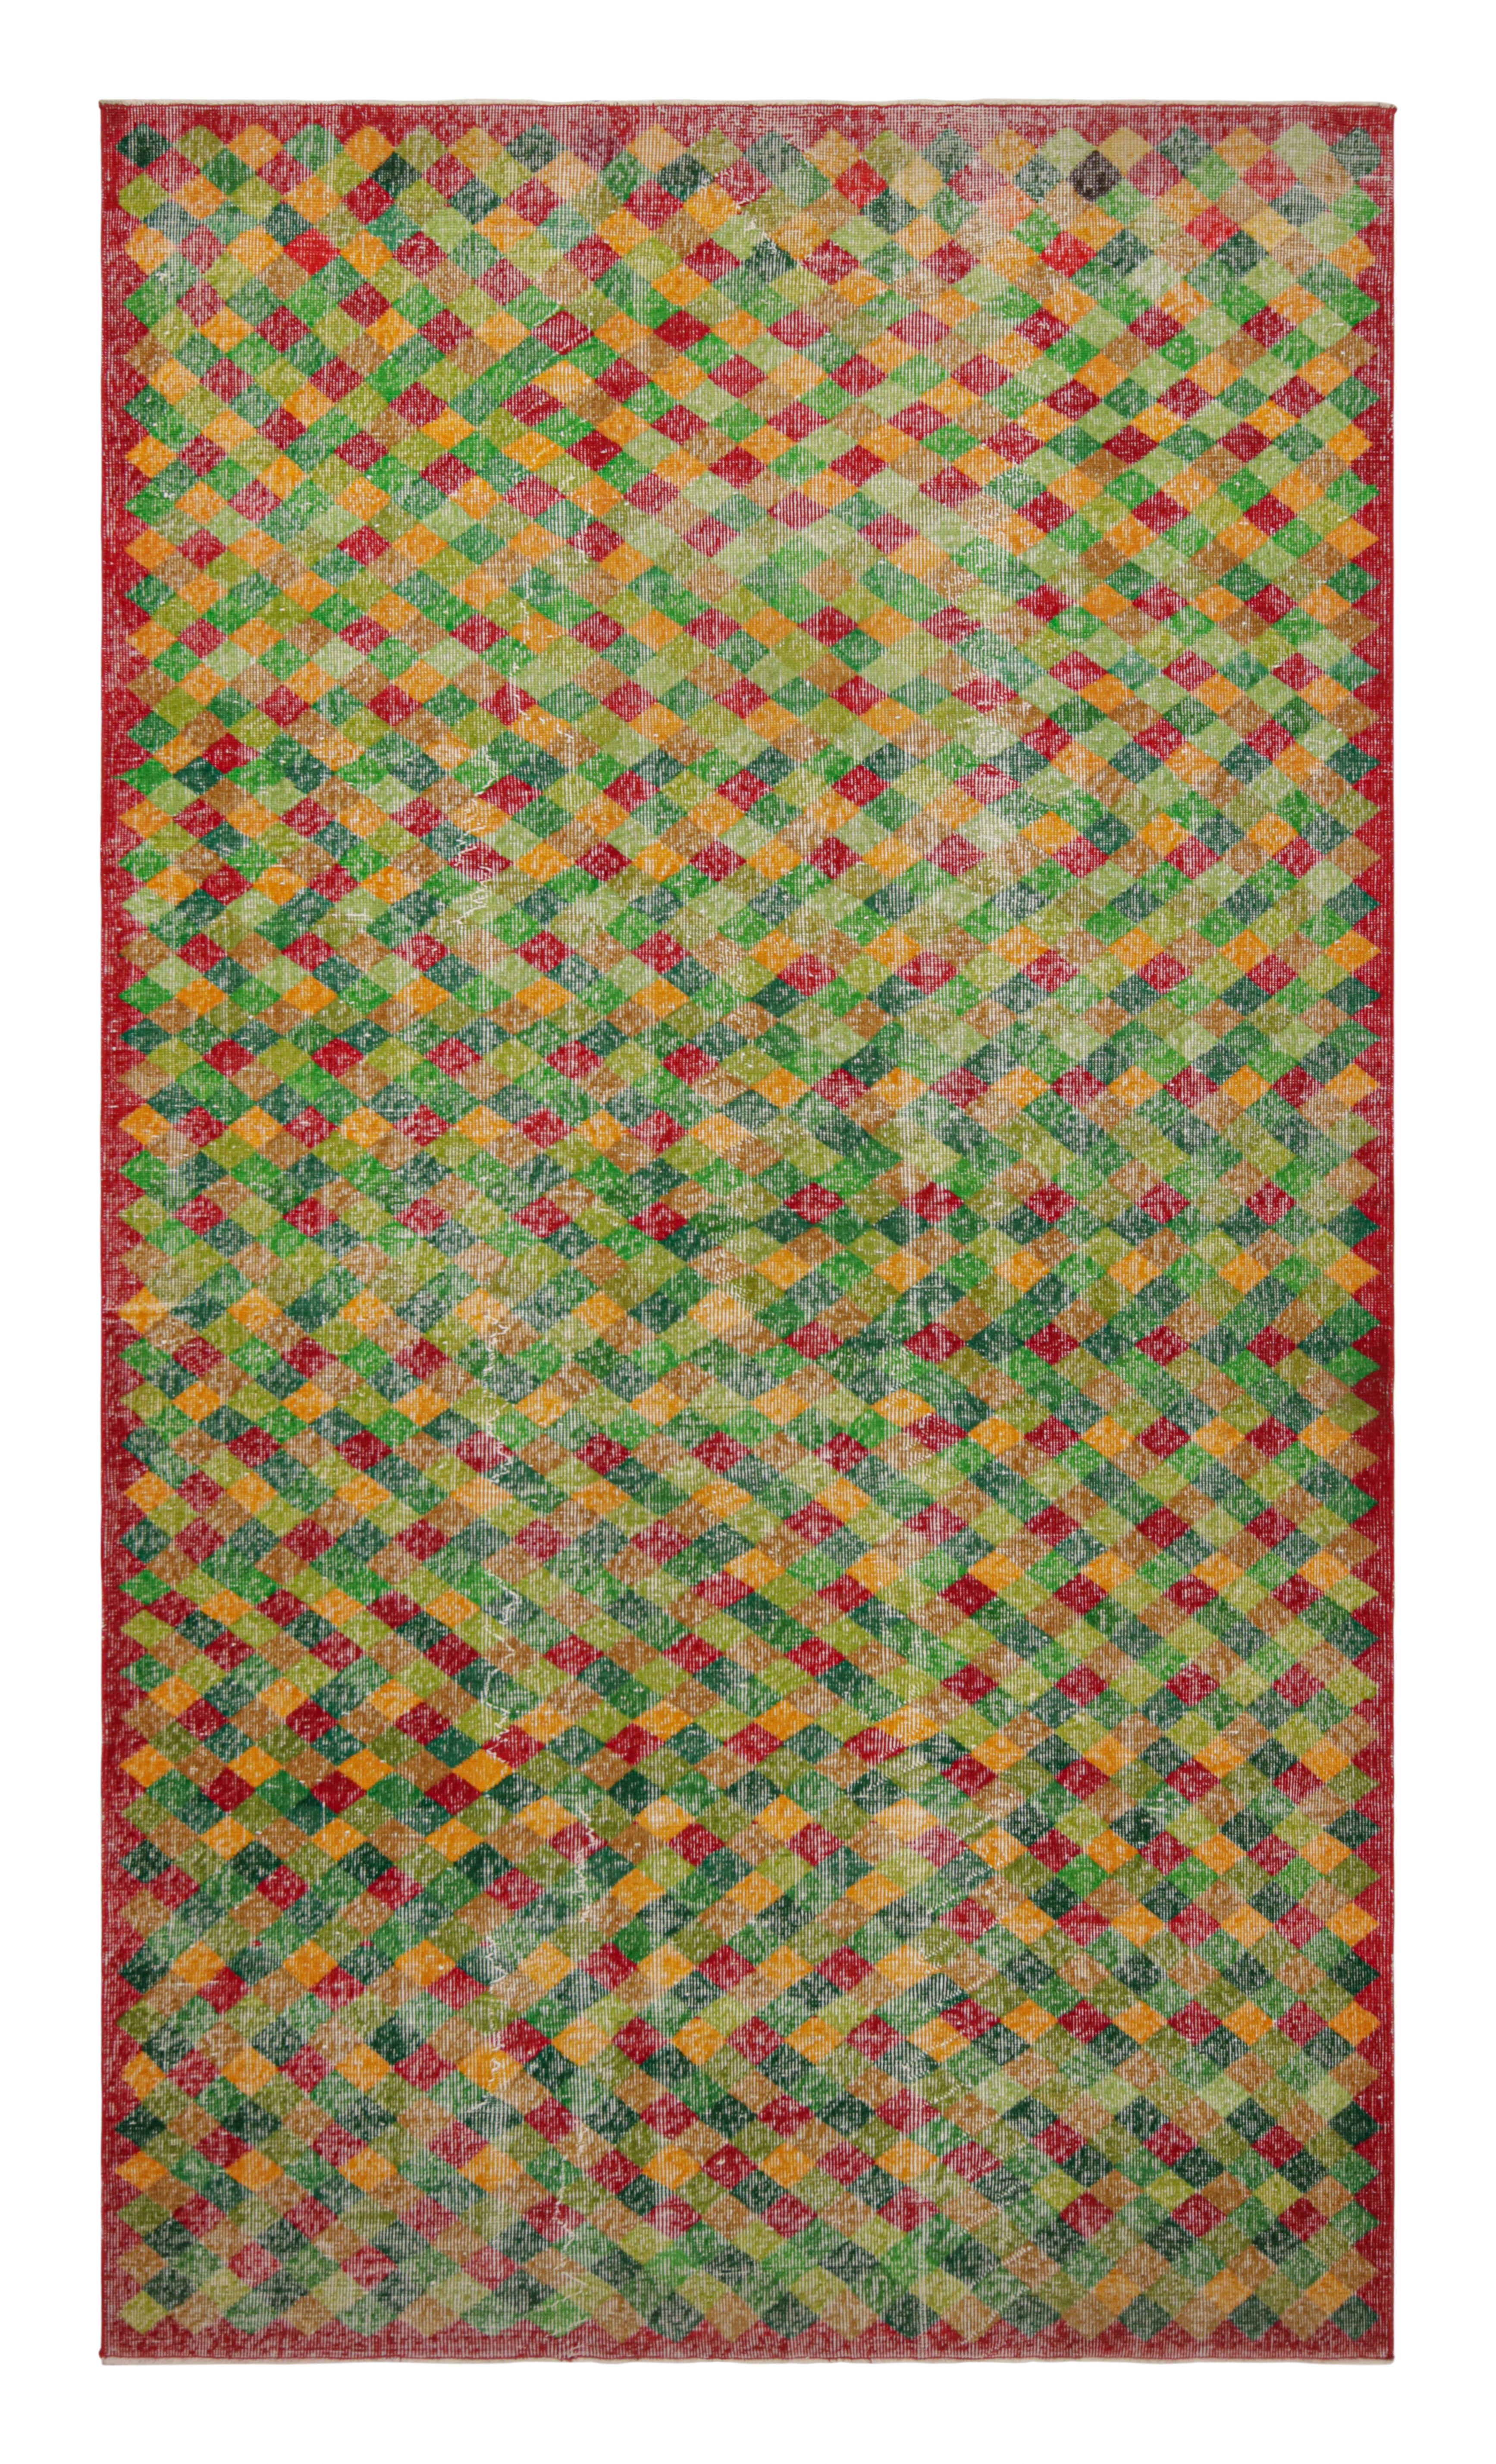 1960er Jahre Vintage Art Deco Teppich in Grün Gelb, Rot Geometrisches Muster von Teppich & Kelim